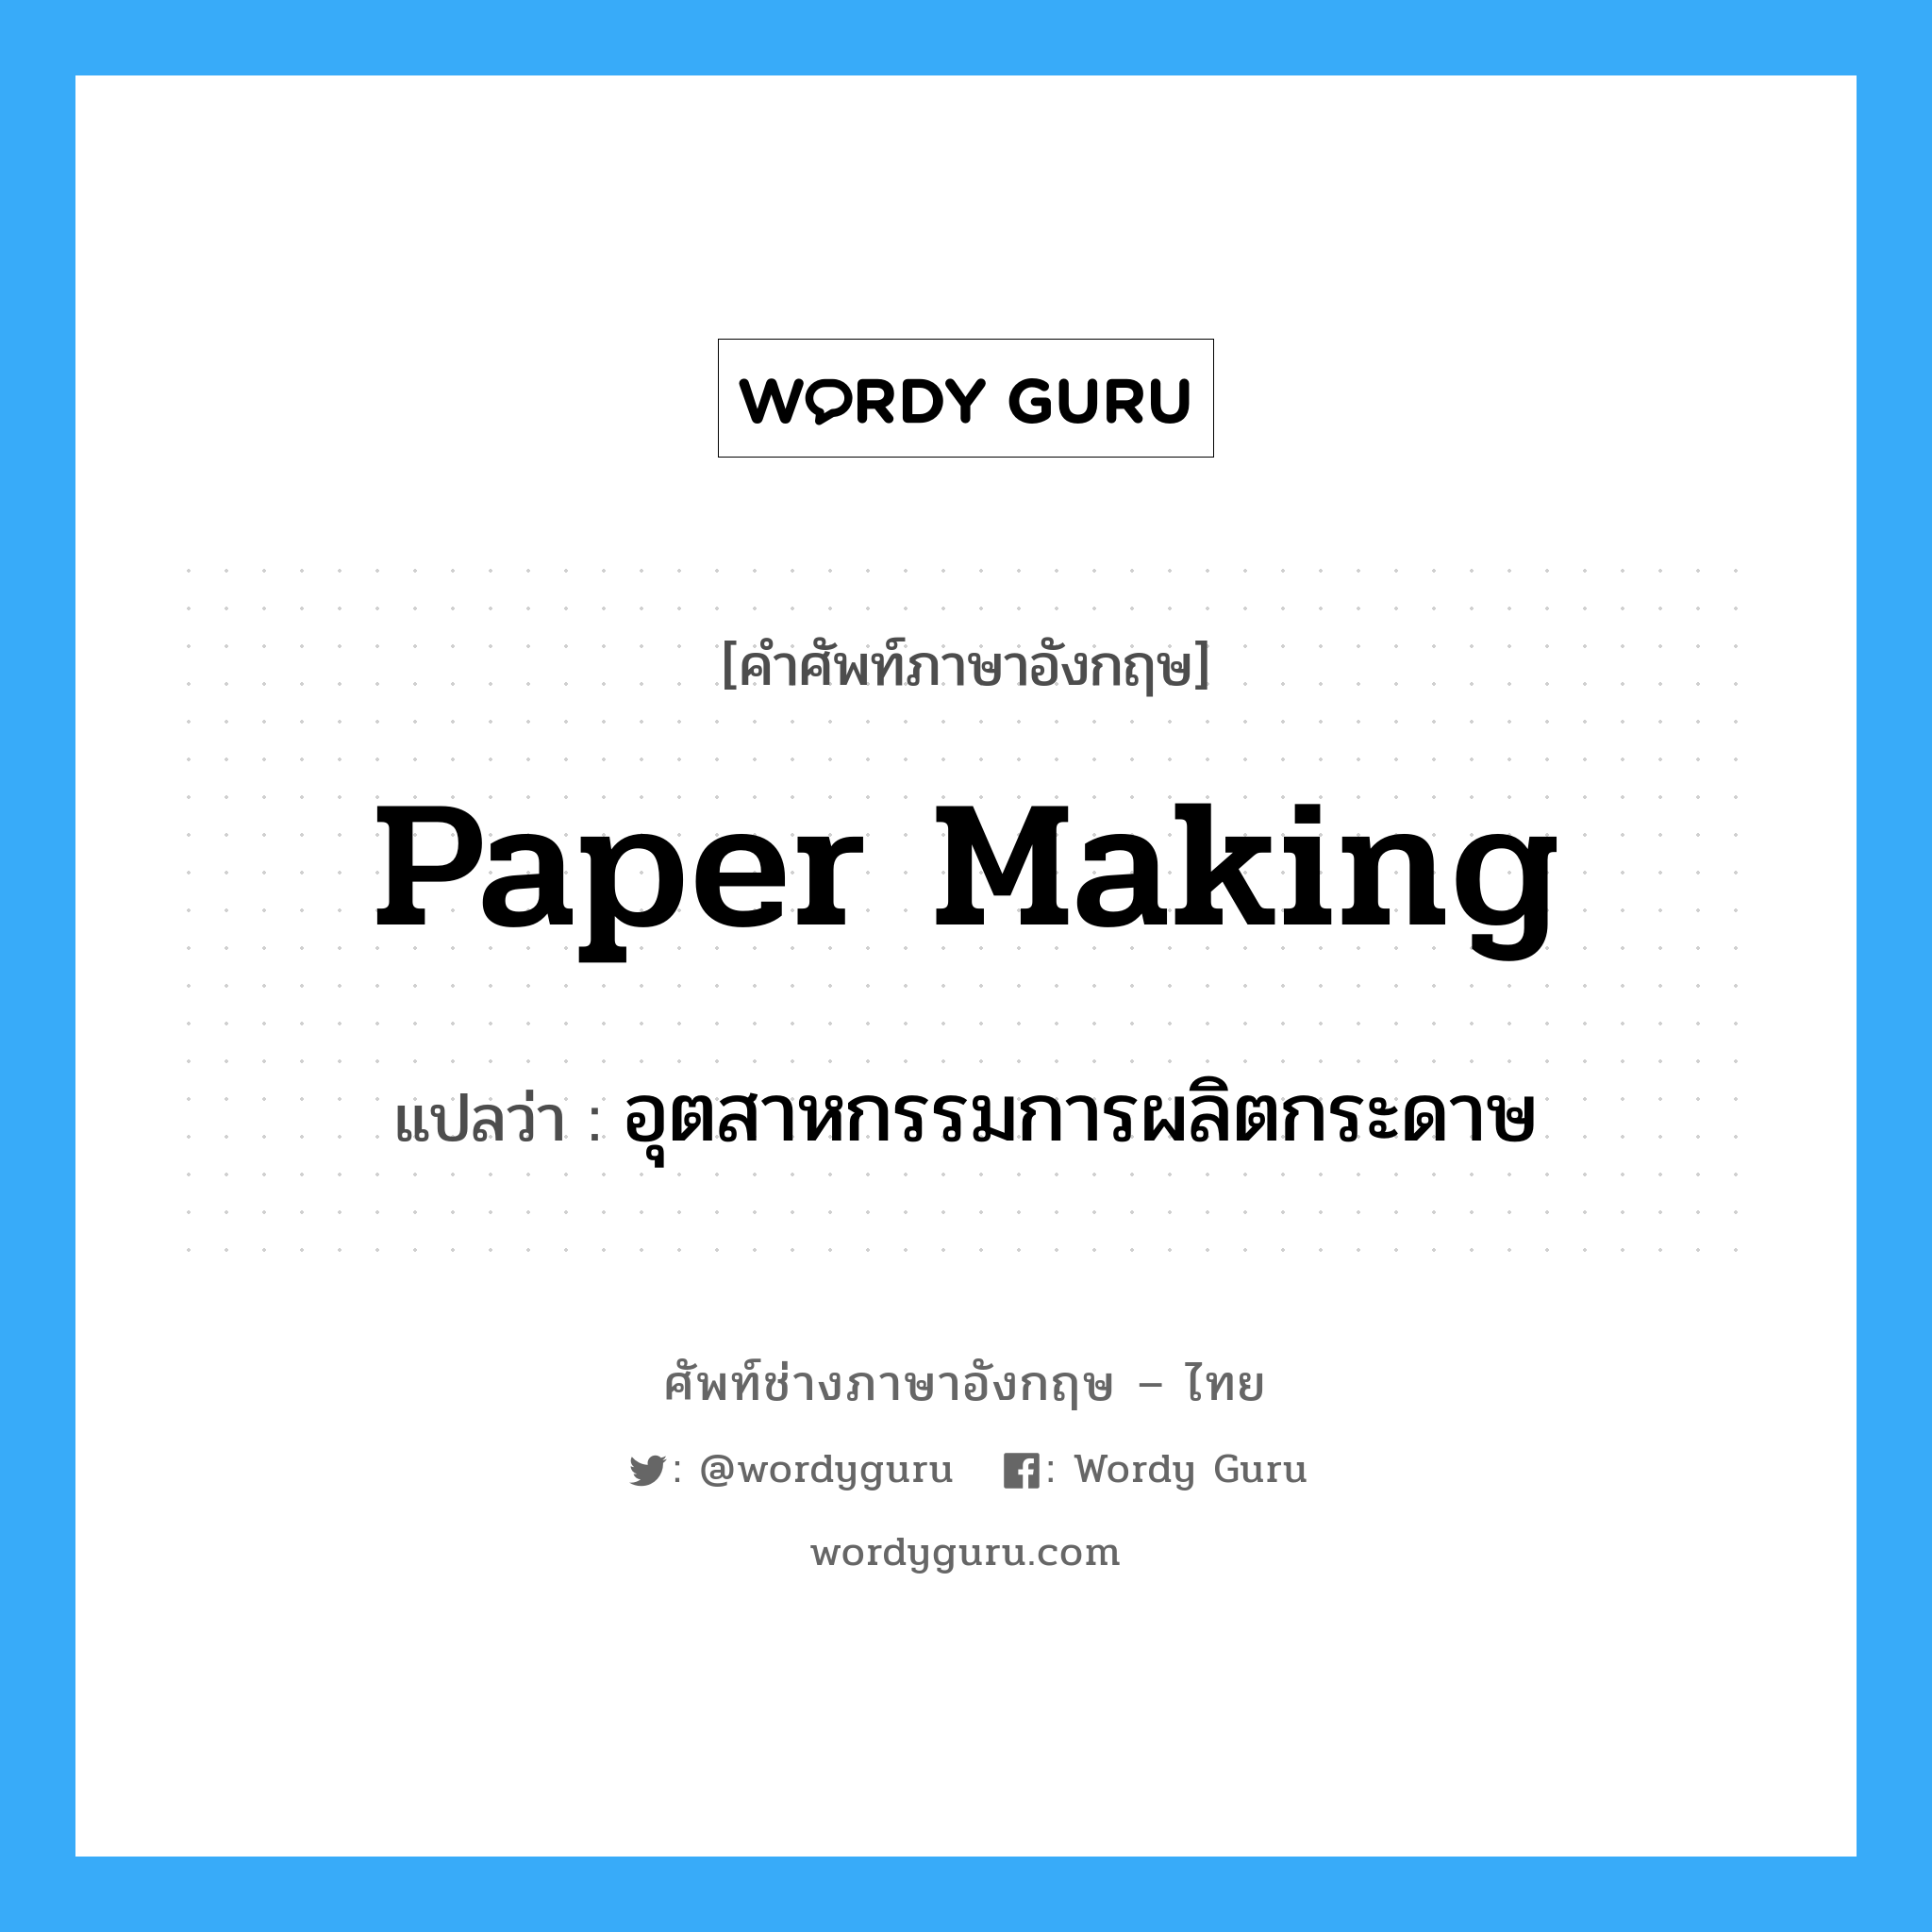 อุตสาหกรรมการผลิตกระดาษ ภาษาอังกฤษ?, คำศัพท์ช่างภาษาอังกฤษ - ไทย อุตสาหกรรมการผลิตกระดาษ คำศัพท์ภาษาอังกฤษ อุตสาหกรรมการผลิตกระดาษ แปลว่า paper making